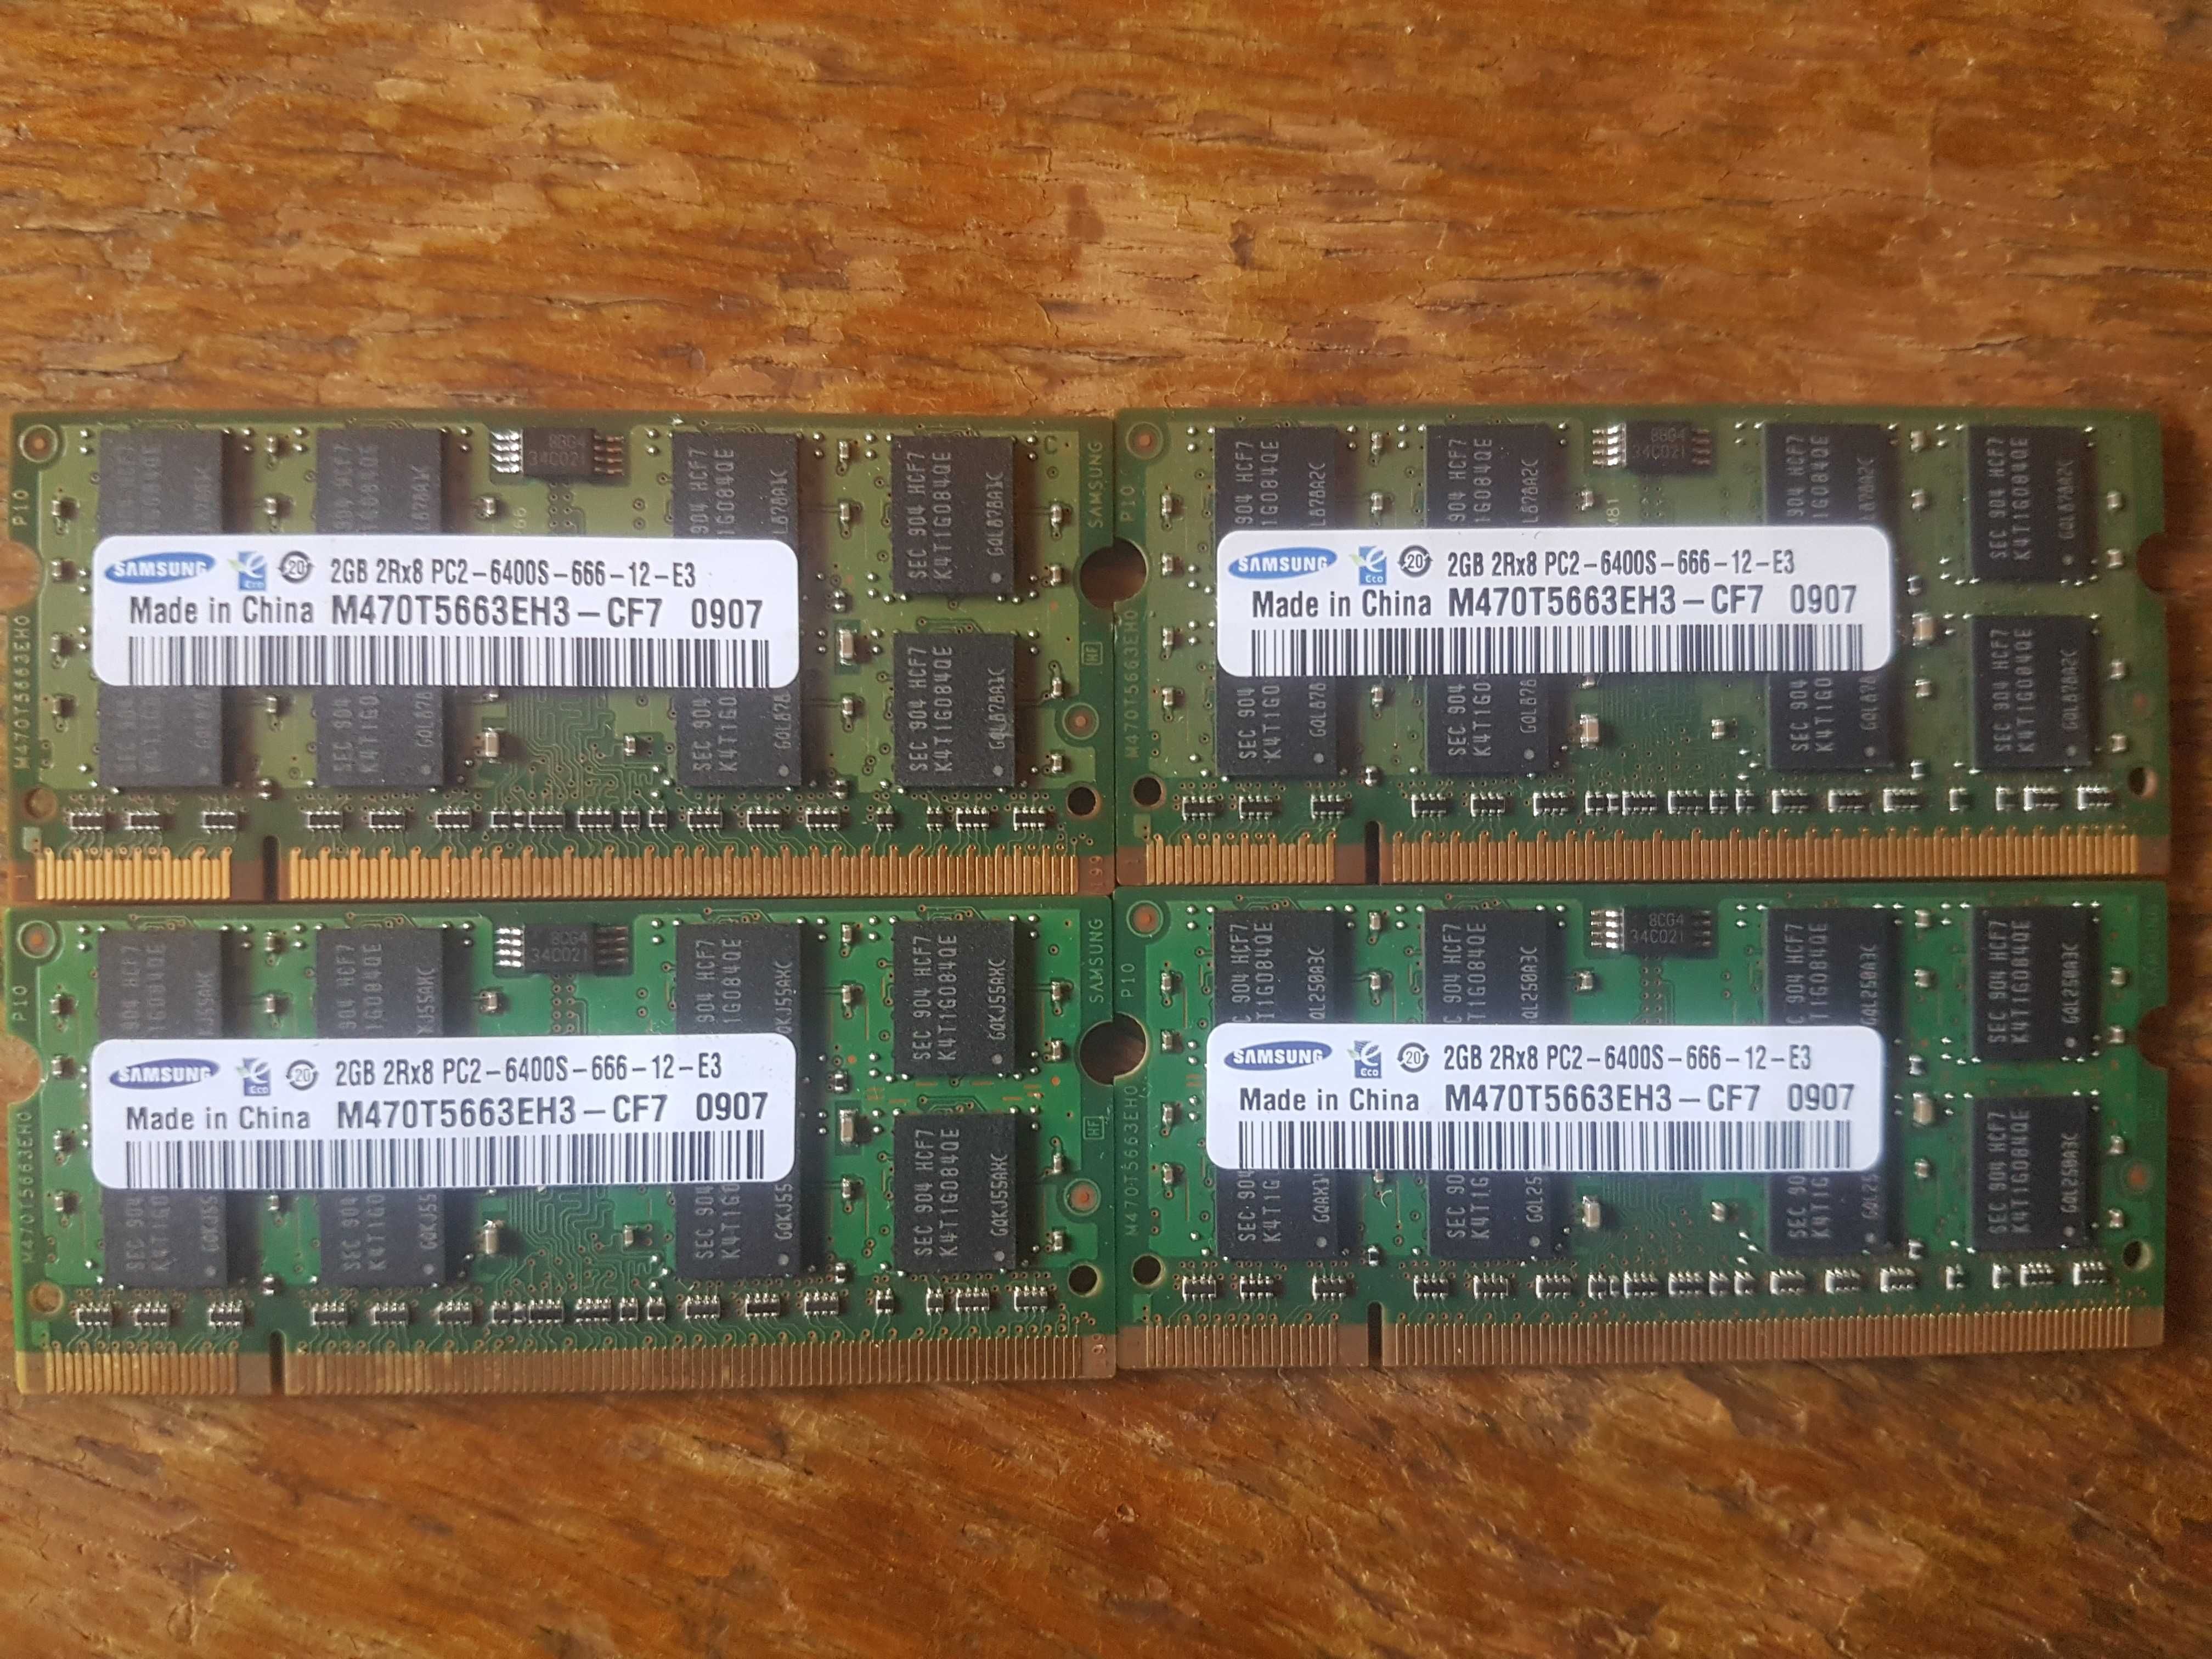 Memórias ram Ddr2 Samsung para portatil (4X2GB) PC2-6400S